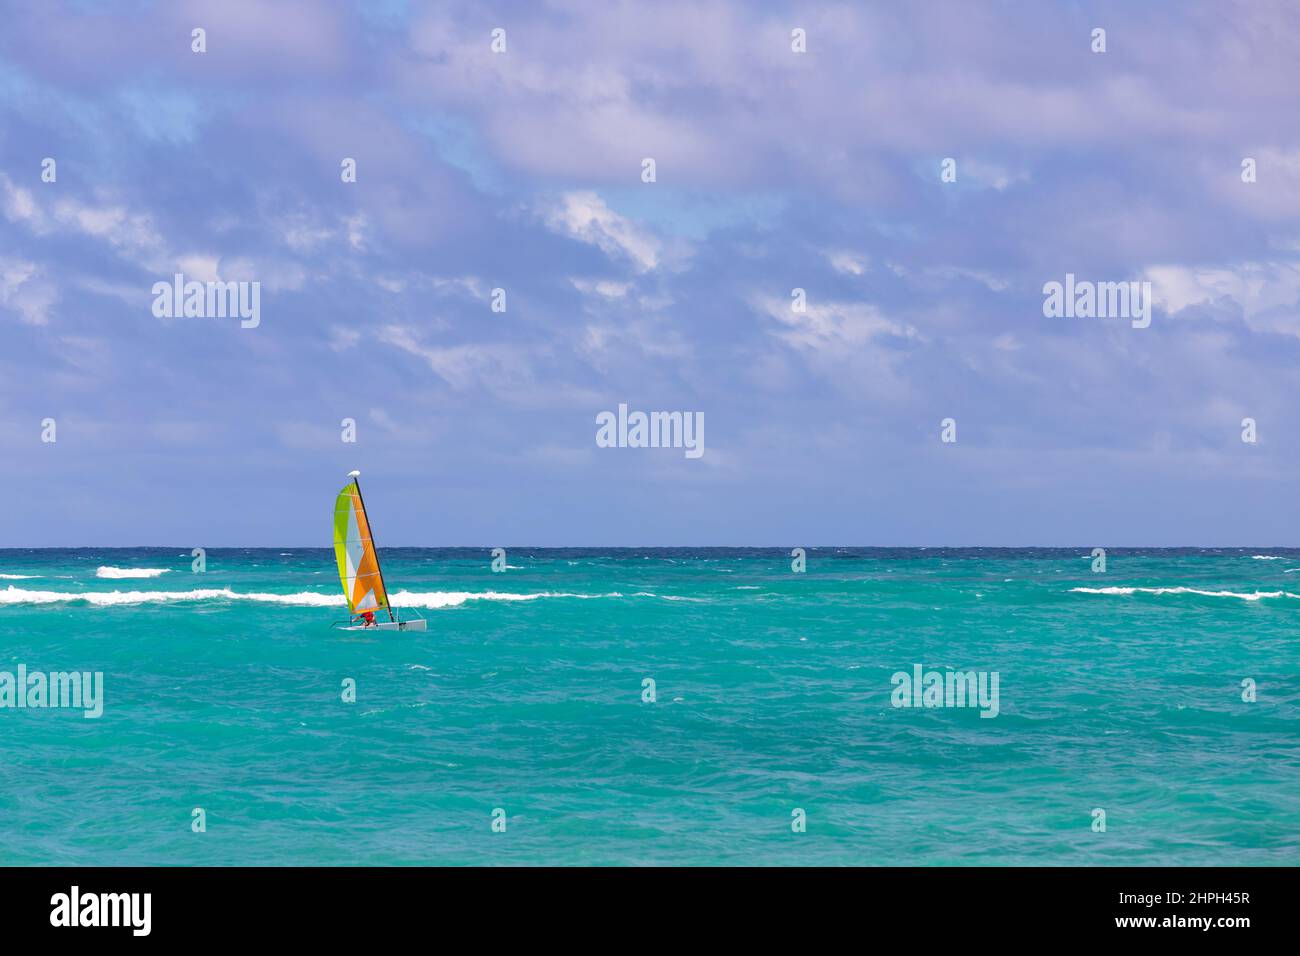 Kleiner Segel-Katamaran fährt am Meerwasser. Dominikanische republik. Bavaro Strand Stockfoto